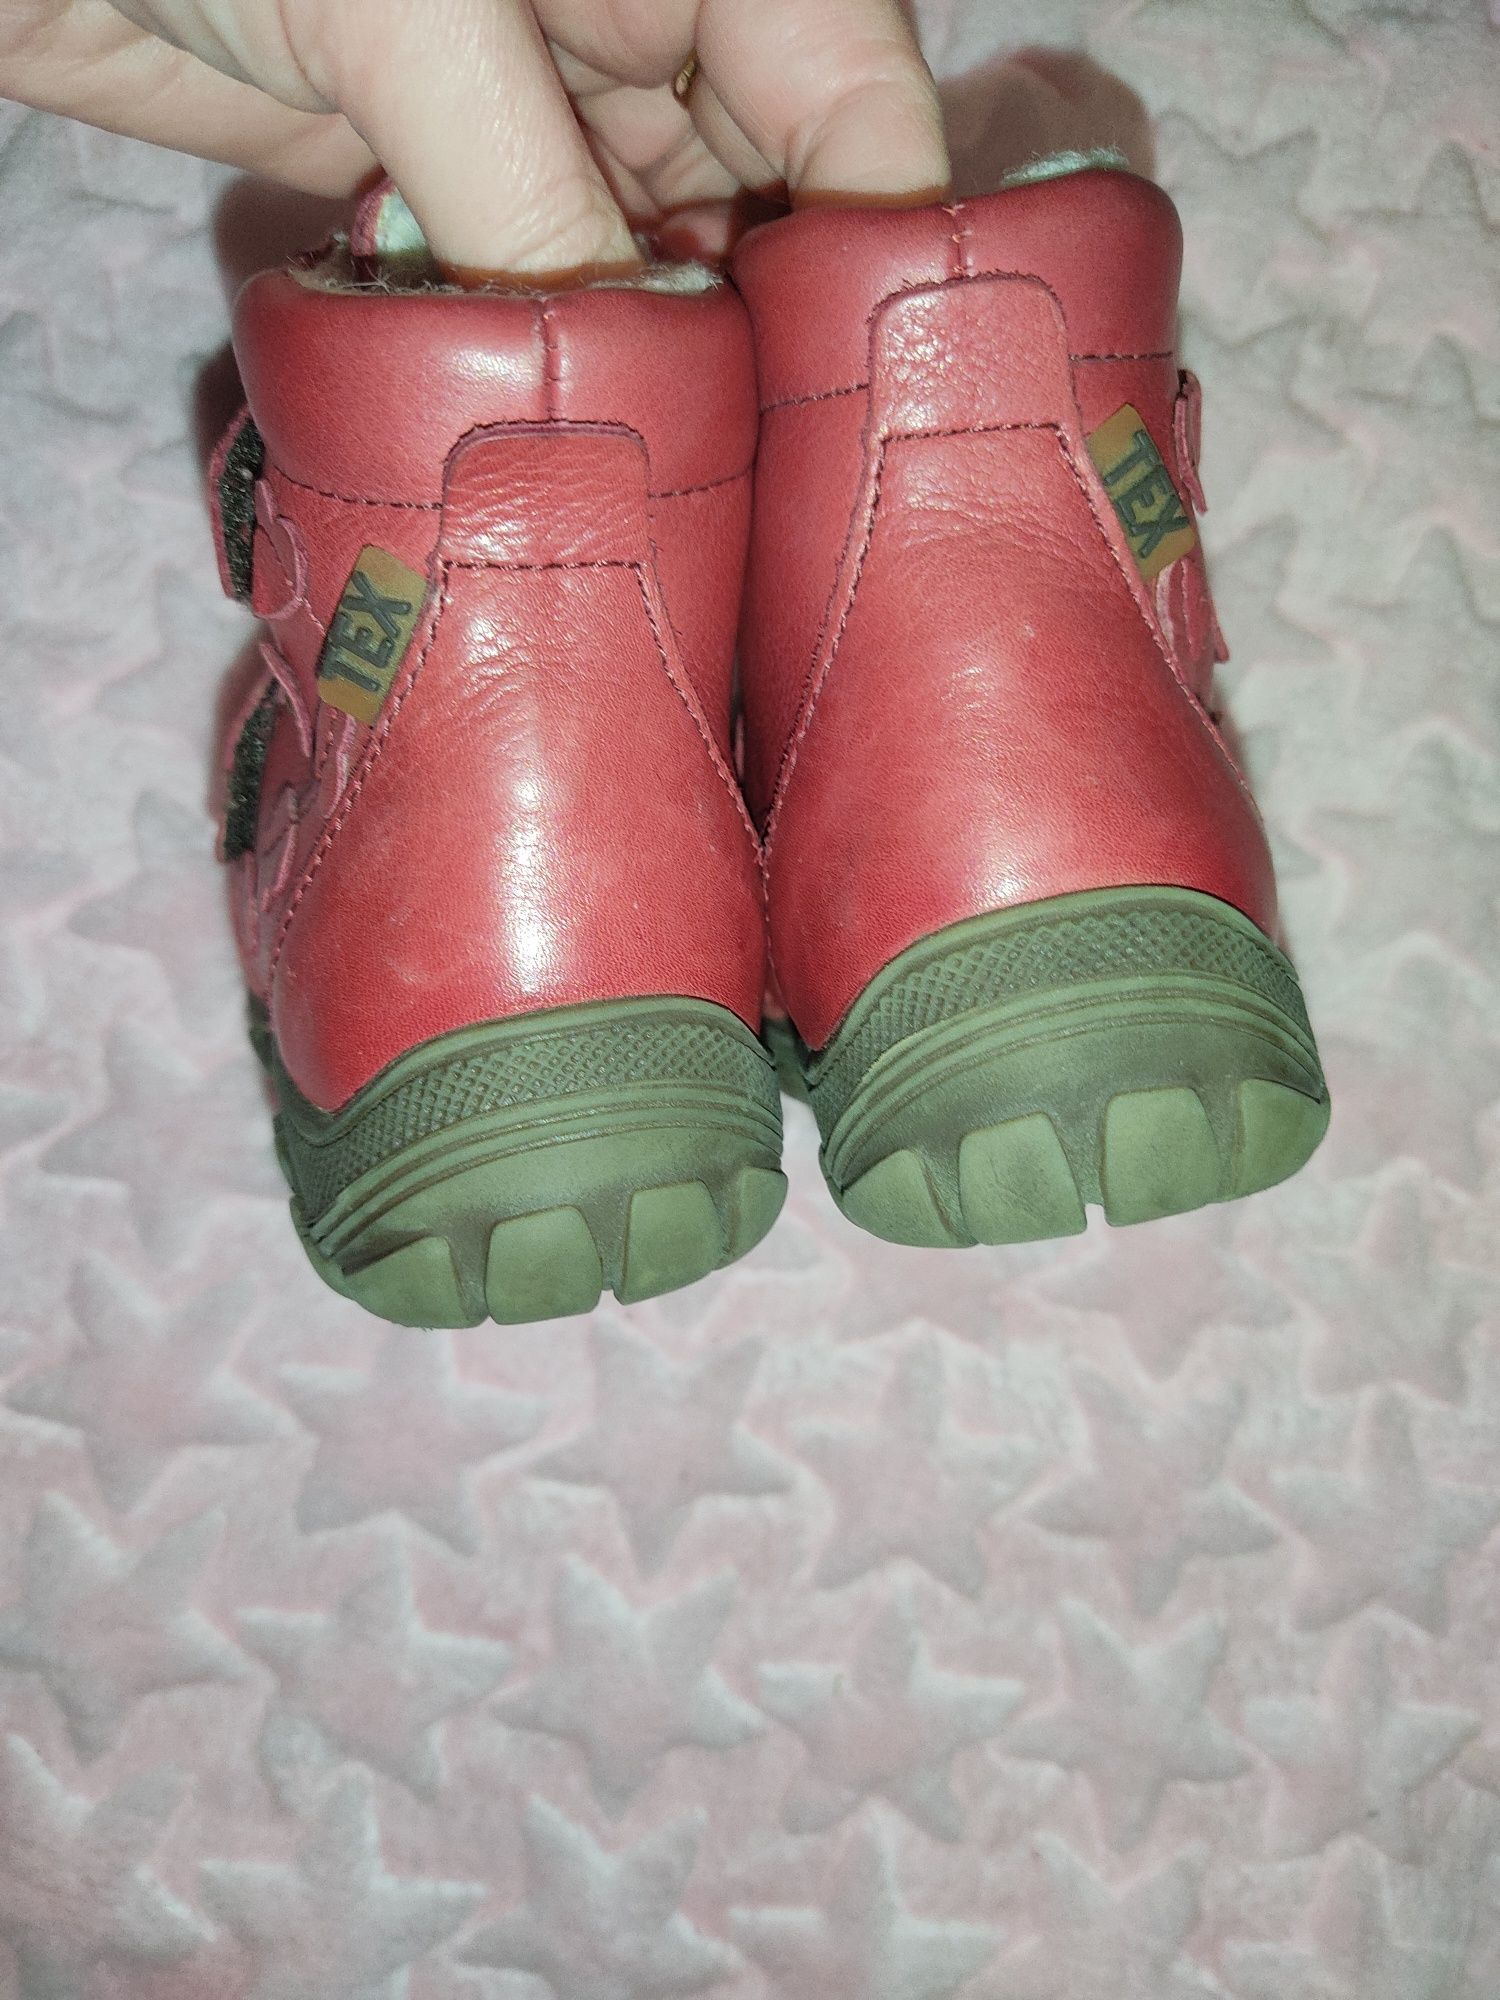 Зимние детские кожаные ботинки сапоги сапожки 23 размер, 14 см.